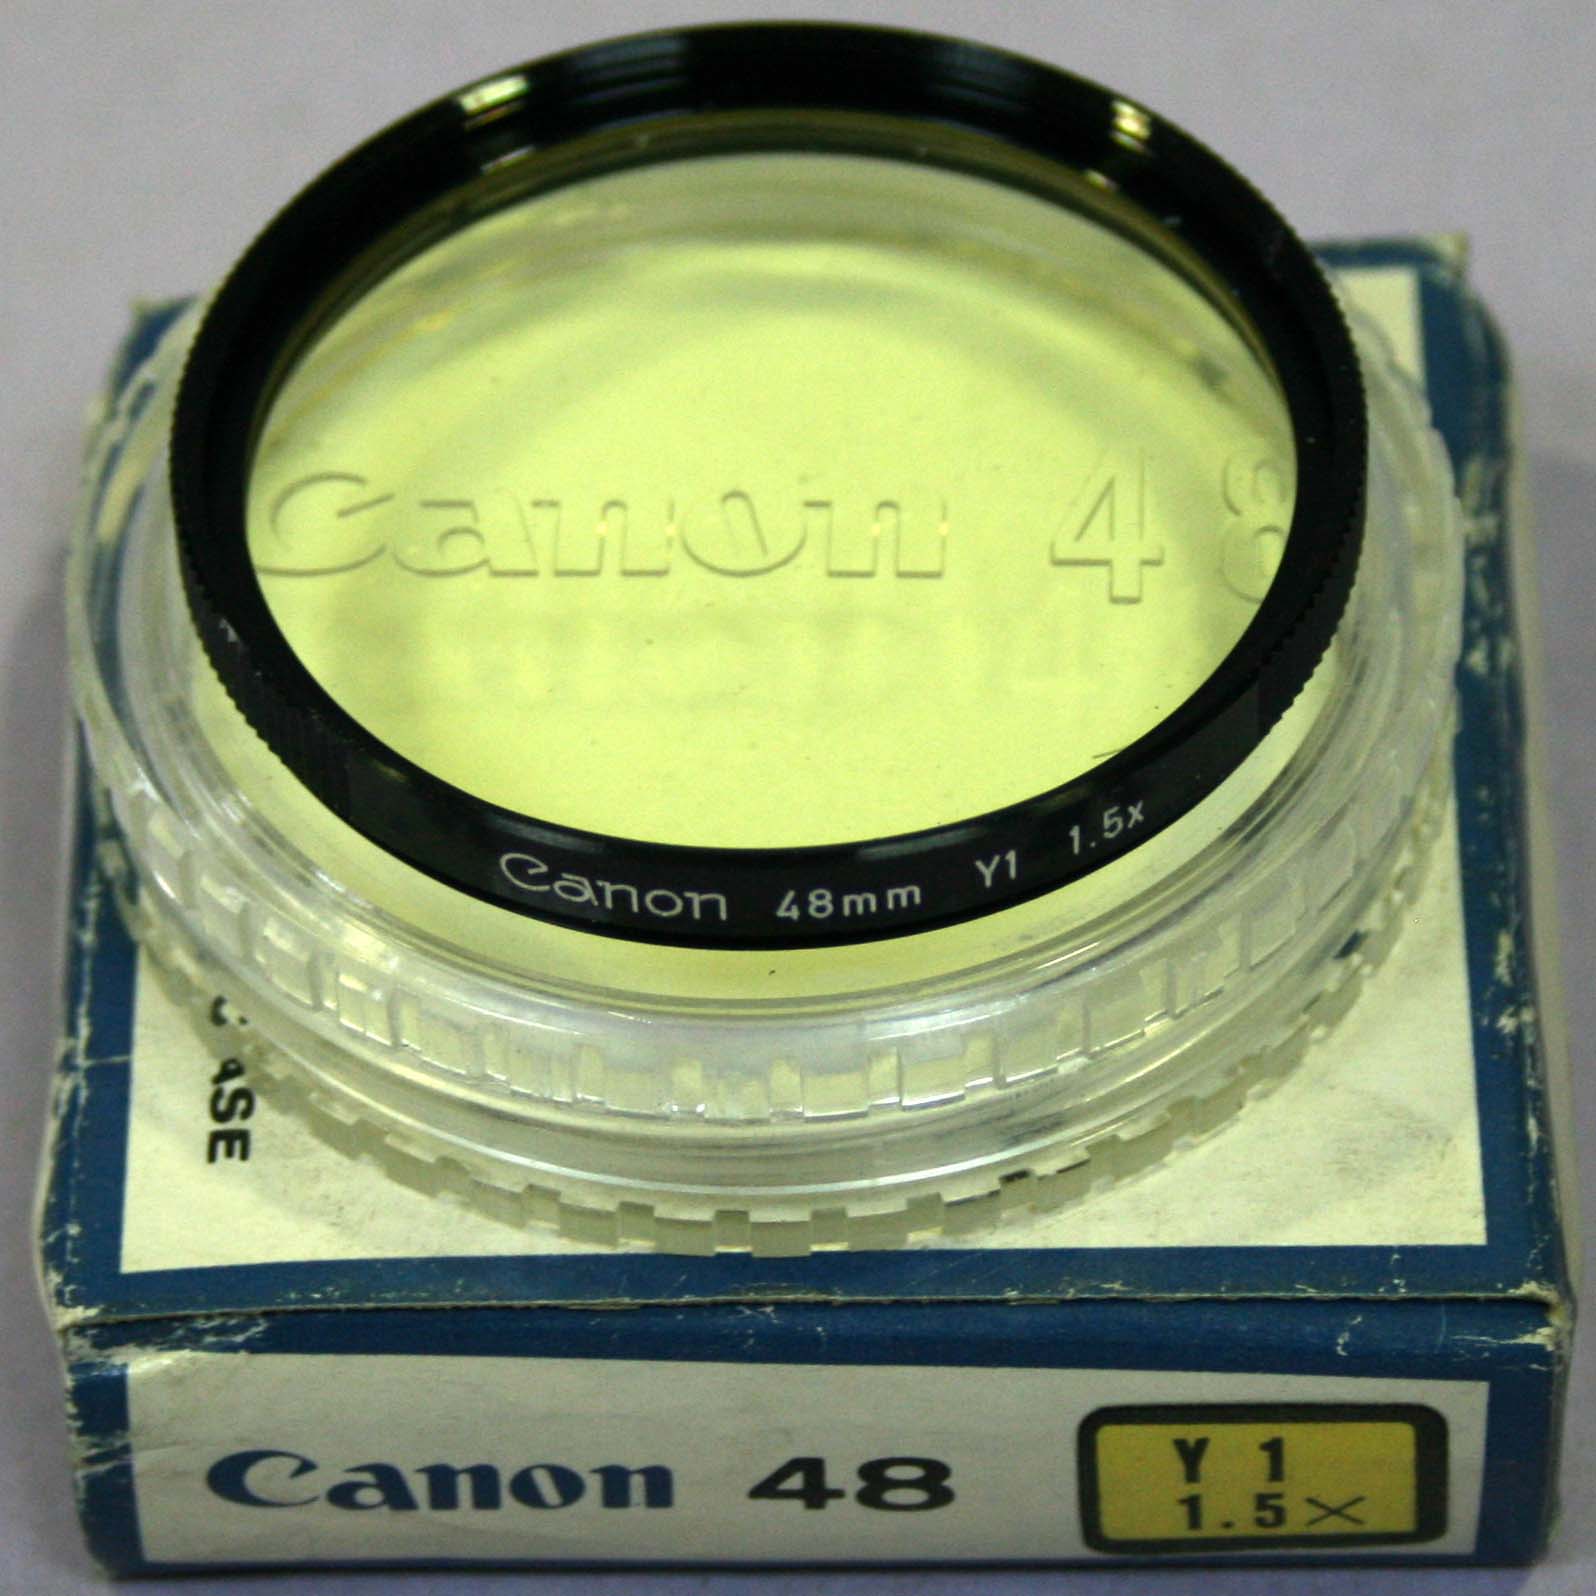 FILTRO CANON 48 Y1 1.5X (AMARILLO CLARO)